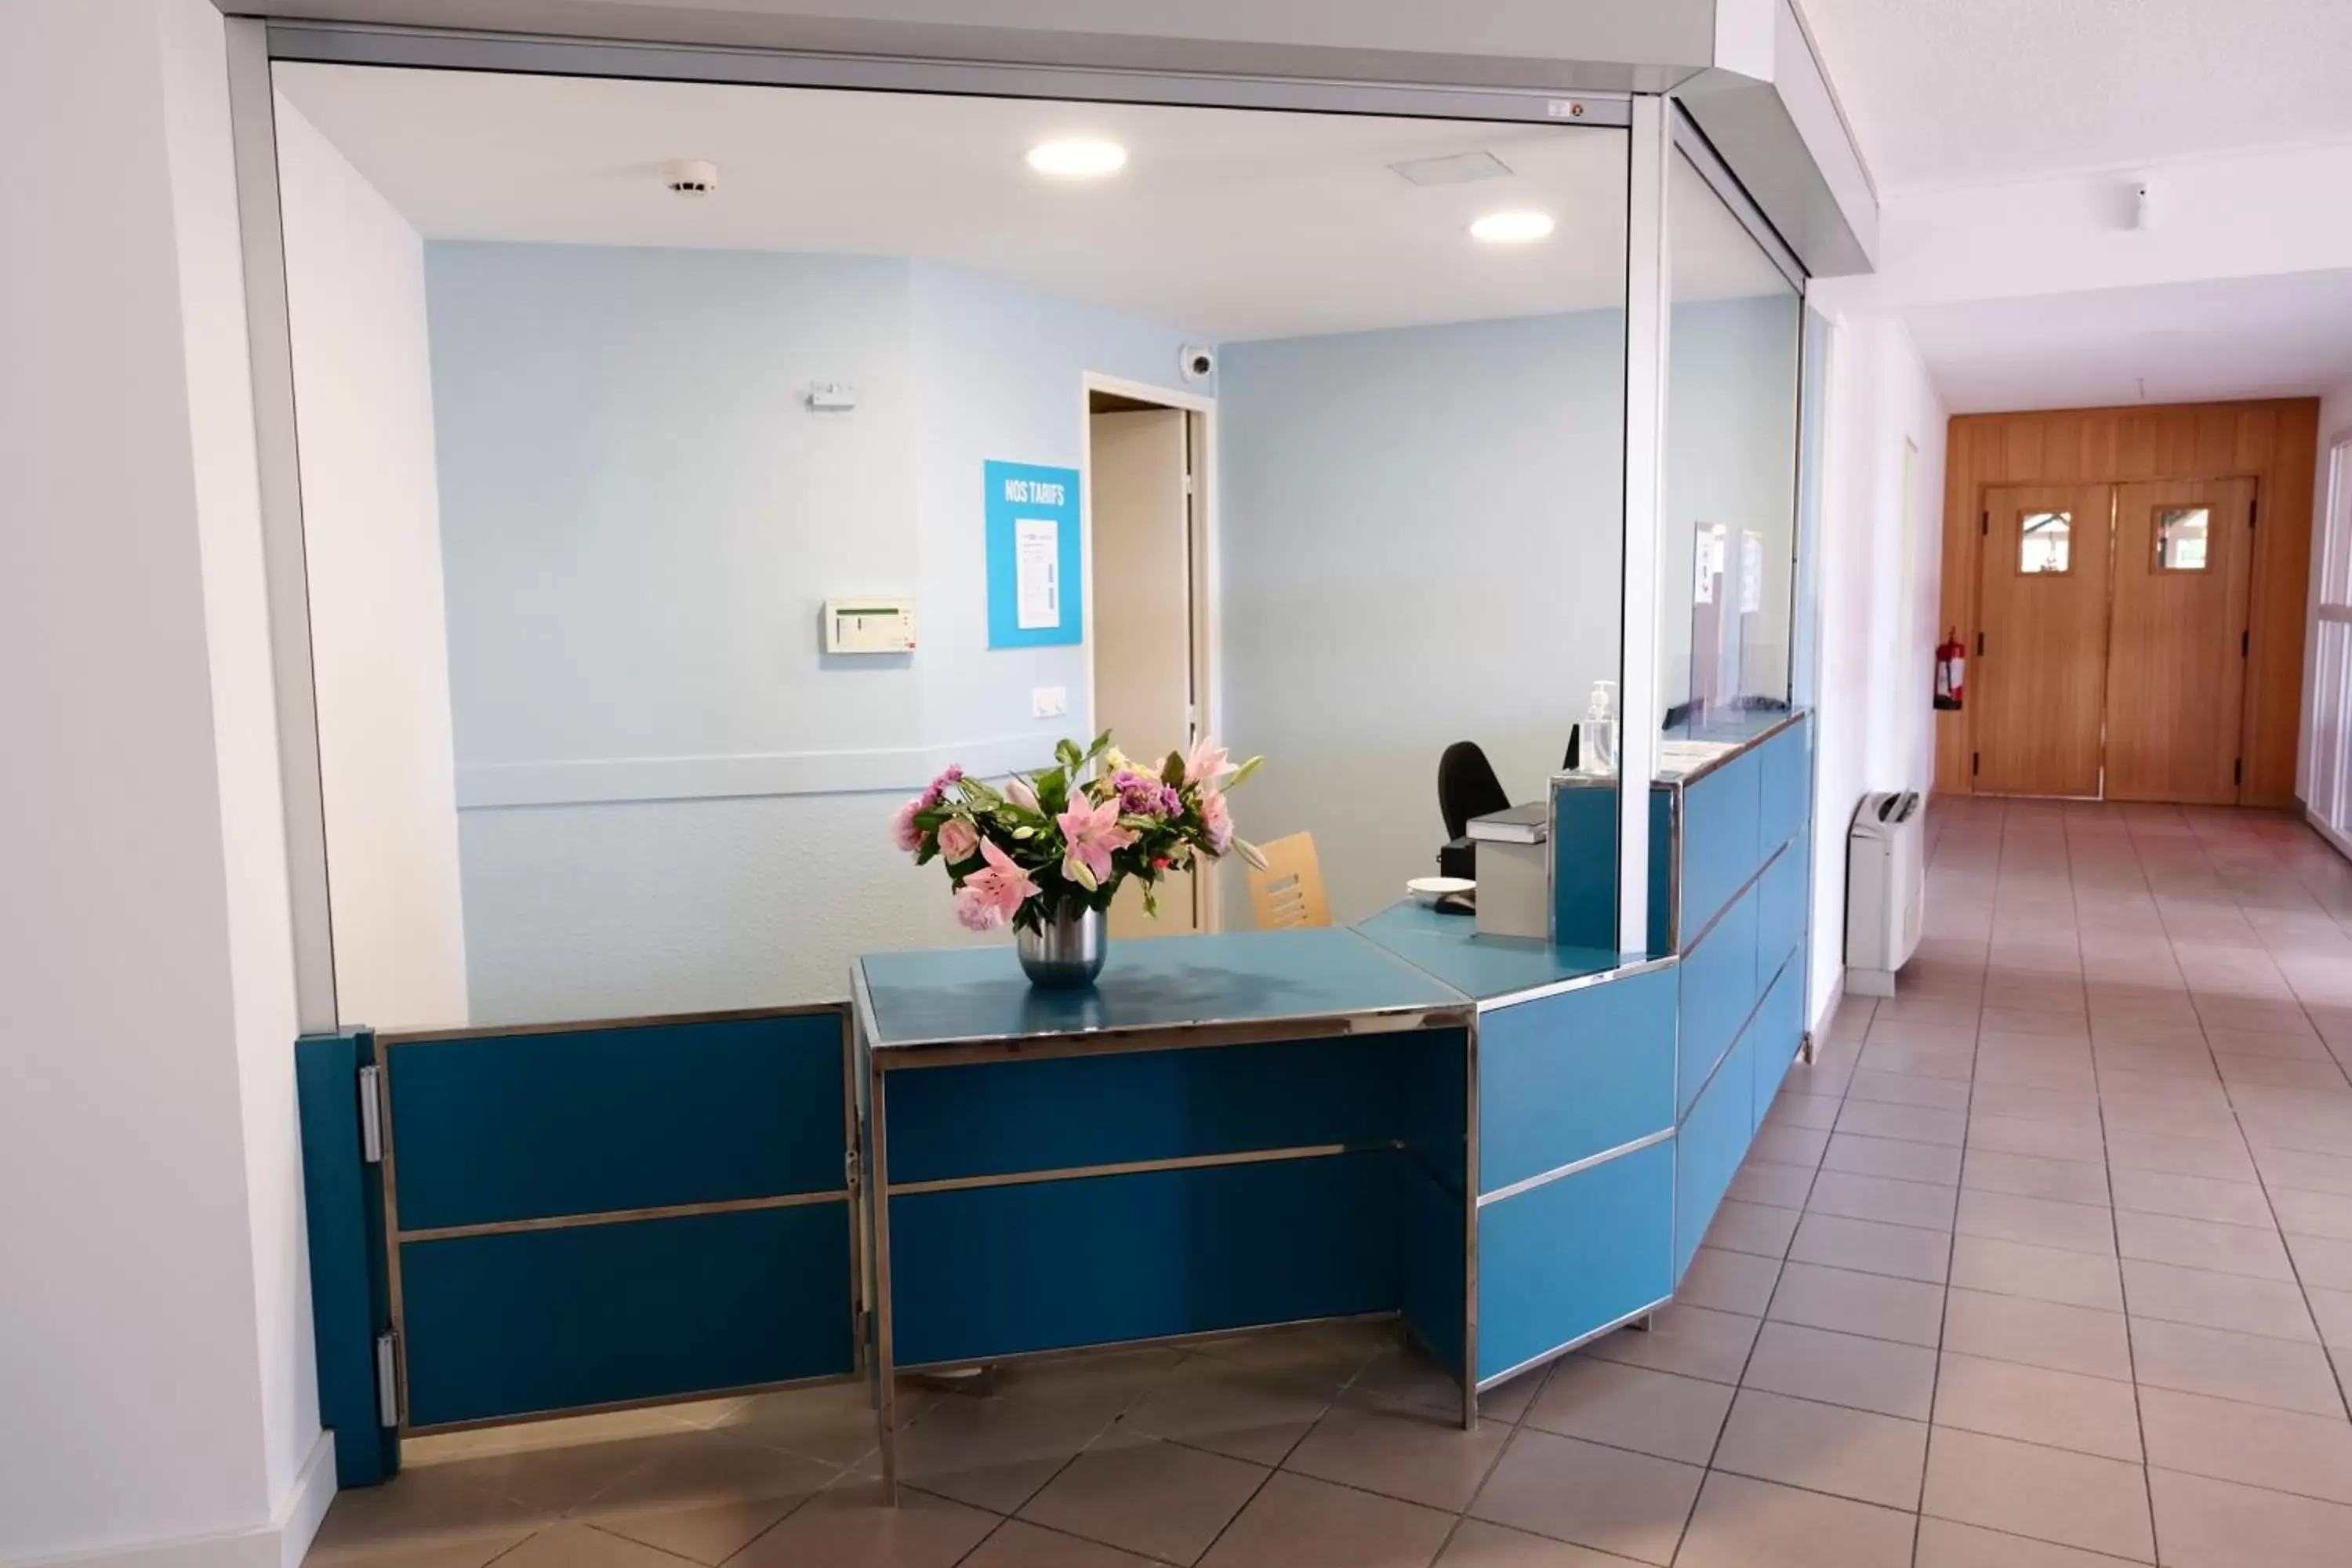 Lobby or reception, Lobby/Reception in Kyriad Direct Perpignan - Aeroport